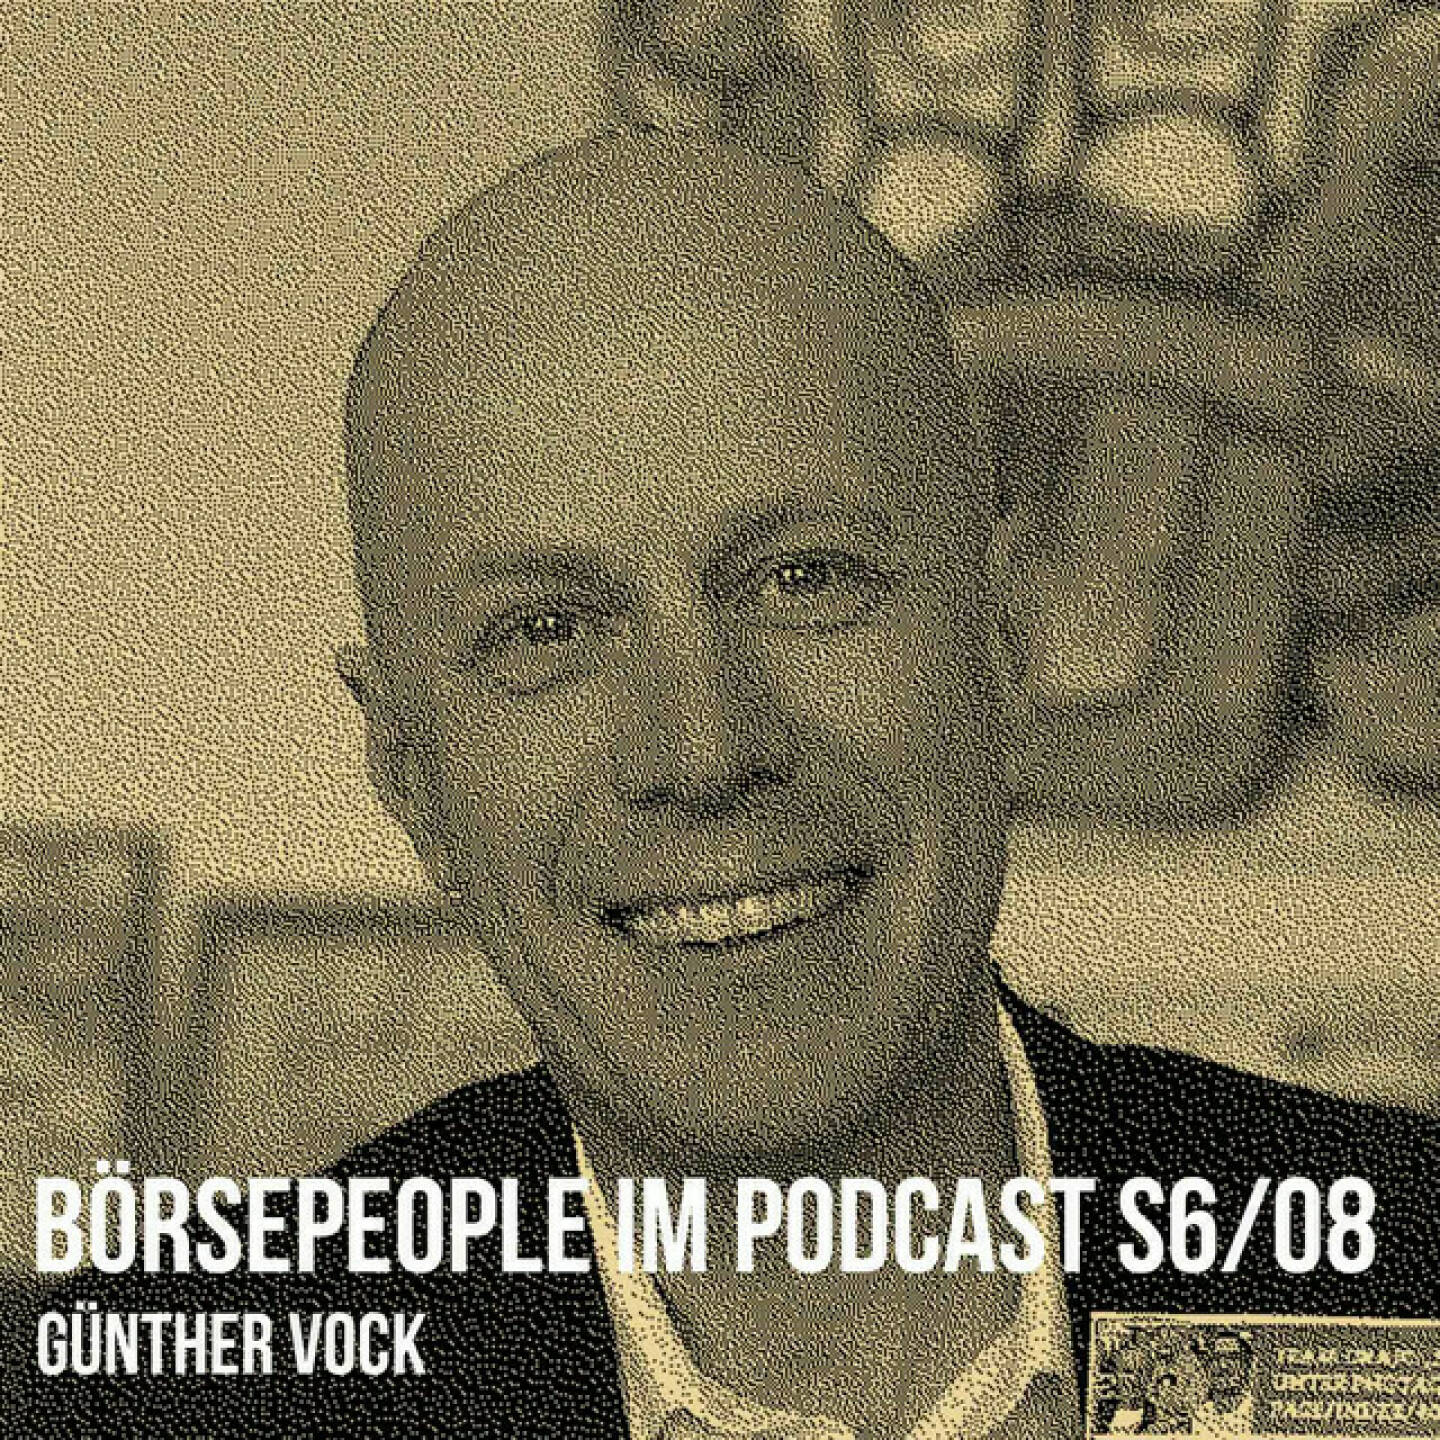 https://open.spotify.com/episode/0vPZtCzBTrvCceOUh1eYGQ
Börsepeople im Podcast S6/08: Günther Vock - <p>Günther Vock ist Vorstand der Marchfelder Bank, die heuer den 150. Geburtstag begeht. Für Günther würde mein Podcast-Motto &#34;Wiener Börse, Sport, Musik und mehr&#34; übrigens ebenfalls perfekt passen, ist er doch der 1. Kapellmeister, der im Börsepeople-Podcast zu Gast ist sowie ambitionierter Hobbyläufer mit tollen Bestzeiten. Podcastgerecht geht es freilich auch um die Wiener Börse und da hat mich zb interessiert, ob es im Marchfeld eine Art Local Bias gibt (wie zB die NÖ-Stocks EVN, Flughafen, Agrana oder SBO) bzw. wie man Wertpapierberatung konsumieren kann. Zum 150er der Marchfelder Bank sprechen wir natürlich auch über die Wurzeln 1873 bis hin zum Bankenverband-Beitritt 2023. Auch die Kultur ist ein Steckenpferd, Stichworte zB ku.ba oder auch Jazz, was bis Wien-Essling reicht. Einen Plauderlauf vor Ort wird es bald einmal geben und zum Hinsetzen stehen in der Region viele Marchfelder-Bank-Bänke rum. <br/><br/><a href=https://www.marchfelderbank.at target=_blank>https://www.marchfelderbank.at</a><br/><br/>About: Die Serie Börsepeople findet im Rahmen von <a href=http://www.audio-cd.at target=_blank>http://www.audio-cd.at</a> und dem Podcast &#34;Audio-CD.at Indie Podcasts&#34; statt. Es handelt sich dabei um typische Personality- und Werdegang-Gespräche. Die Season 6 umfasst unter dem Motto „23 Börsepeople“ wieder 23 Talks  Presenter der Season 6 ist saisongerecht 6b47, <a href=https://6b47.com/de/home target=_blank>https://6b47.com/de/home</a> . Welcher der meistgehörte Börsepeople Podcast ist, sieht man unter <a href=http://www.audio-cd.at/people target=_blank>http://www.audio-cd.at/people.</a> Nach den ersten drei Seasons führte Thomas Tschol und gewann dafür einen Number One Award für 2022. Der Zwischenstand des laufenden Rankings ist tagesaktuell um 12 Uhr aktualisiert.<br/><br/>Bewertungen bei Apple (oder auch Spotify) machen mir Freude: <a href=https://podcasts.apple.com/at/podcast/audio-cd-at-indie-podcasts-wiener-boerse-sport-musik-und-mehr/id1484919130 target=_blank>https://podcasts.apple.com/at/podcast/audio-cd-at-indie-podcasts-wiener-boerse-sport-musik-und-mehr/id1484919130</a> .</p>